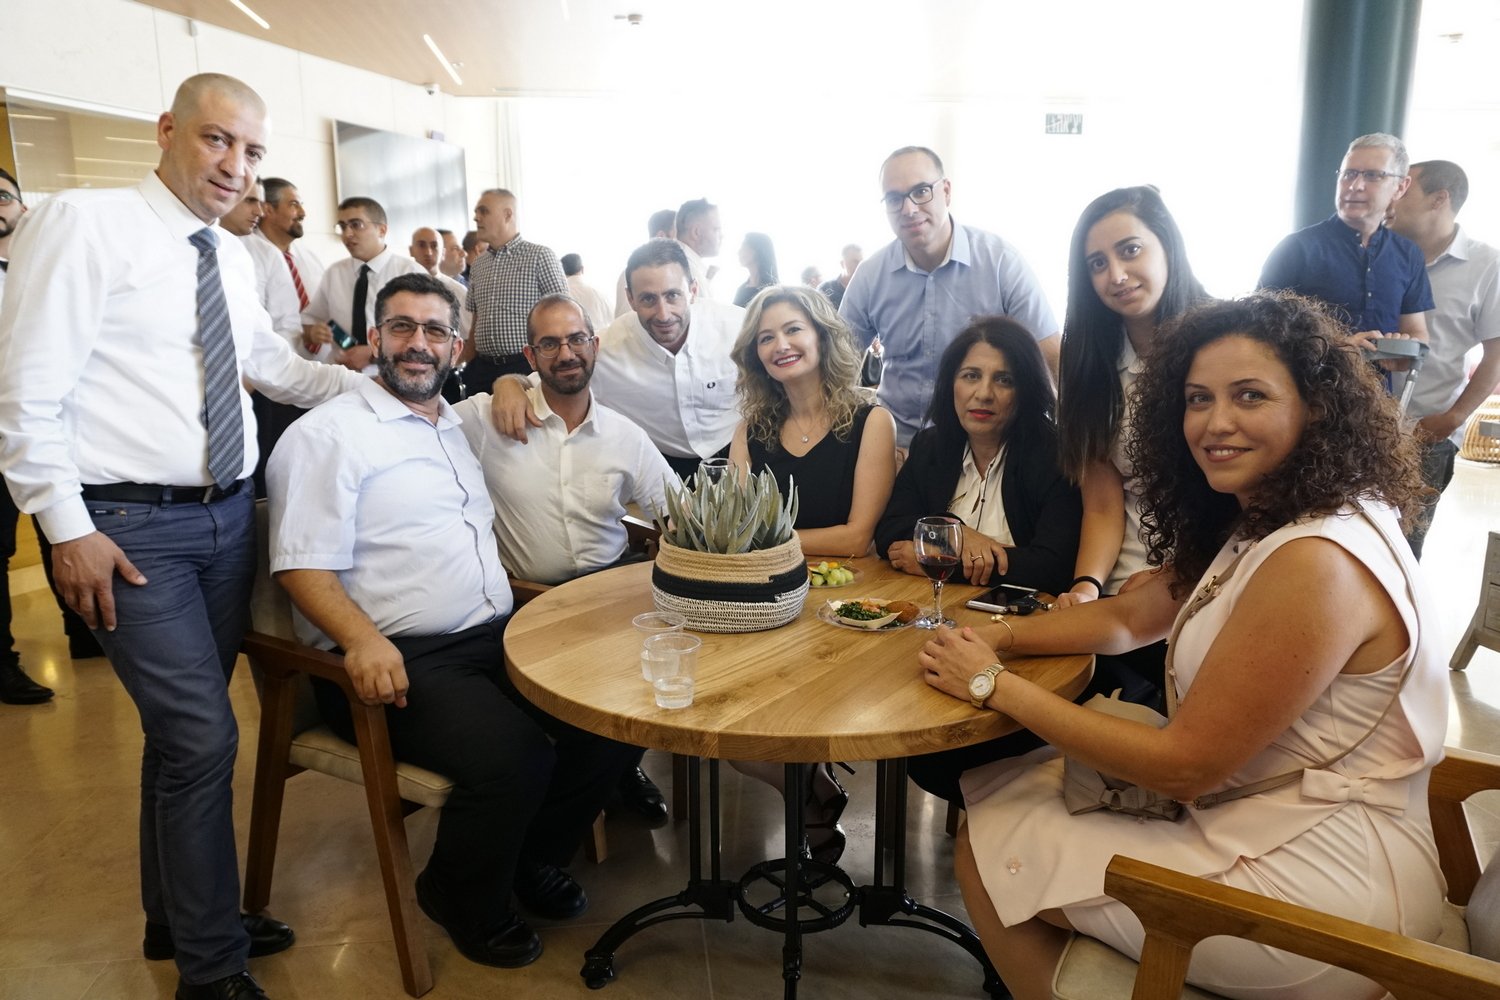 المحامي حييمي: انه لشرف كبير ان تقام جلسة اللجنة القطرية الافتتاحية في الناصرة -11